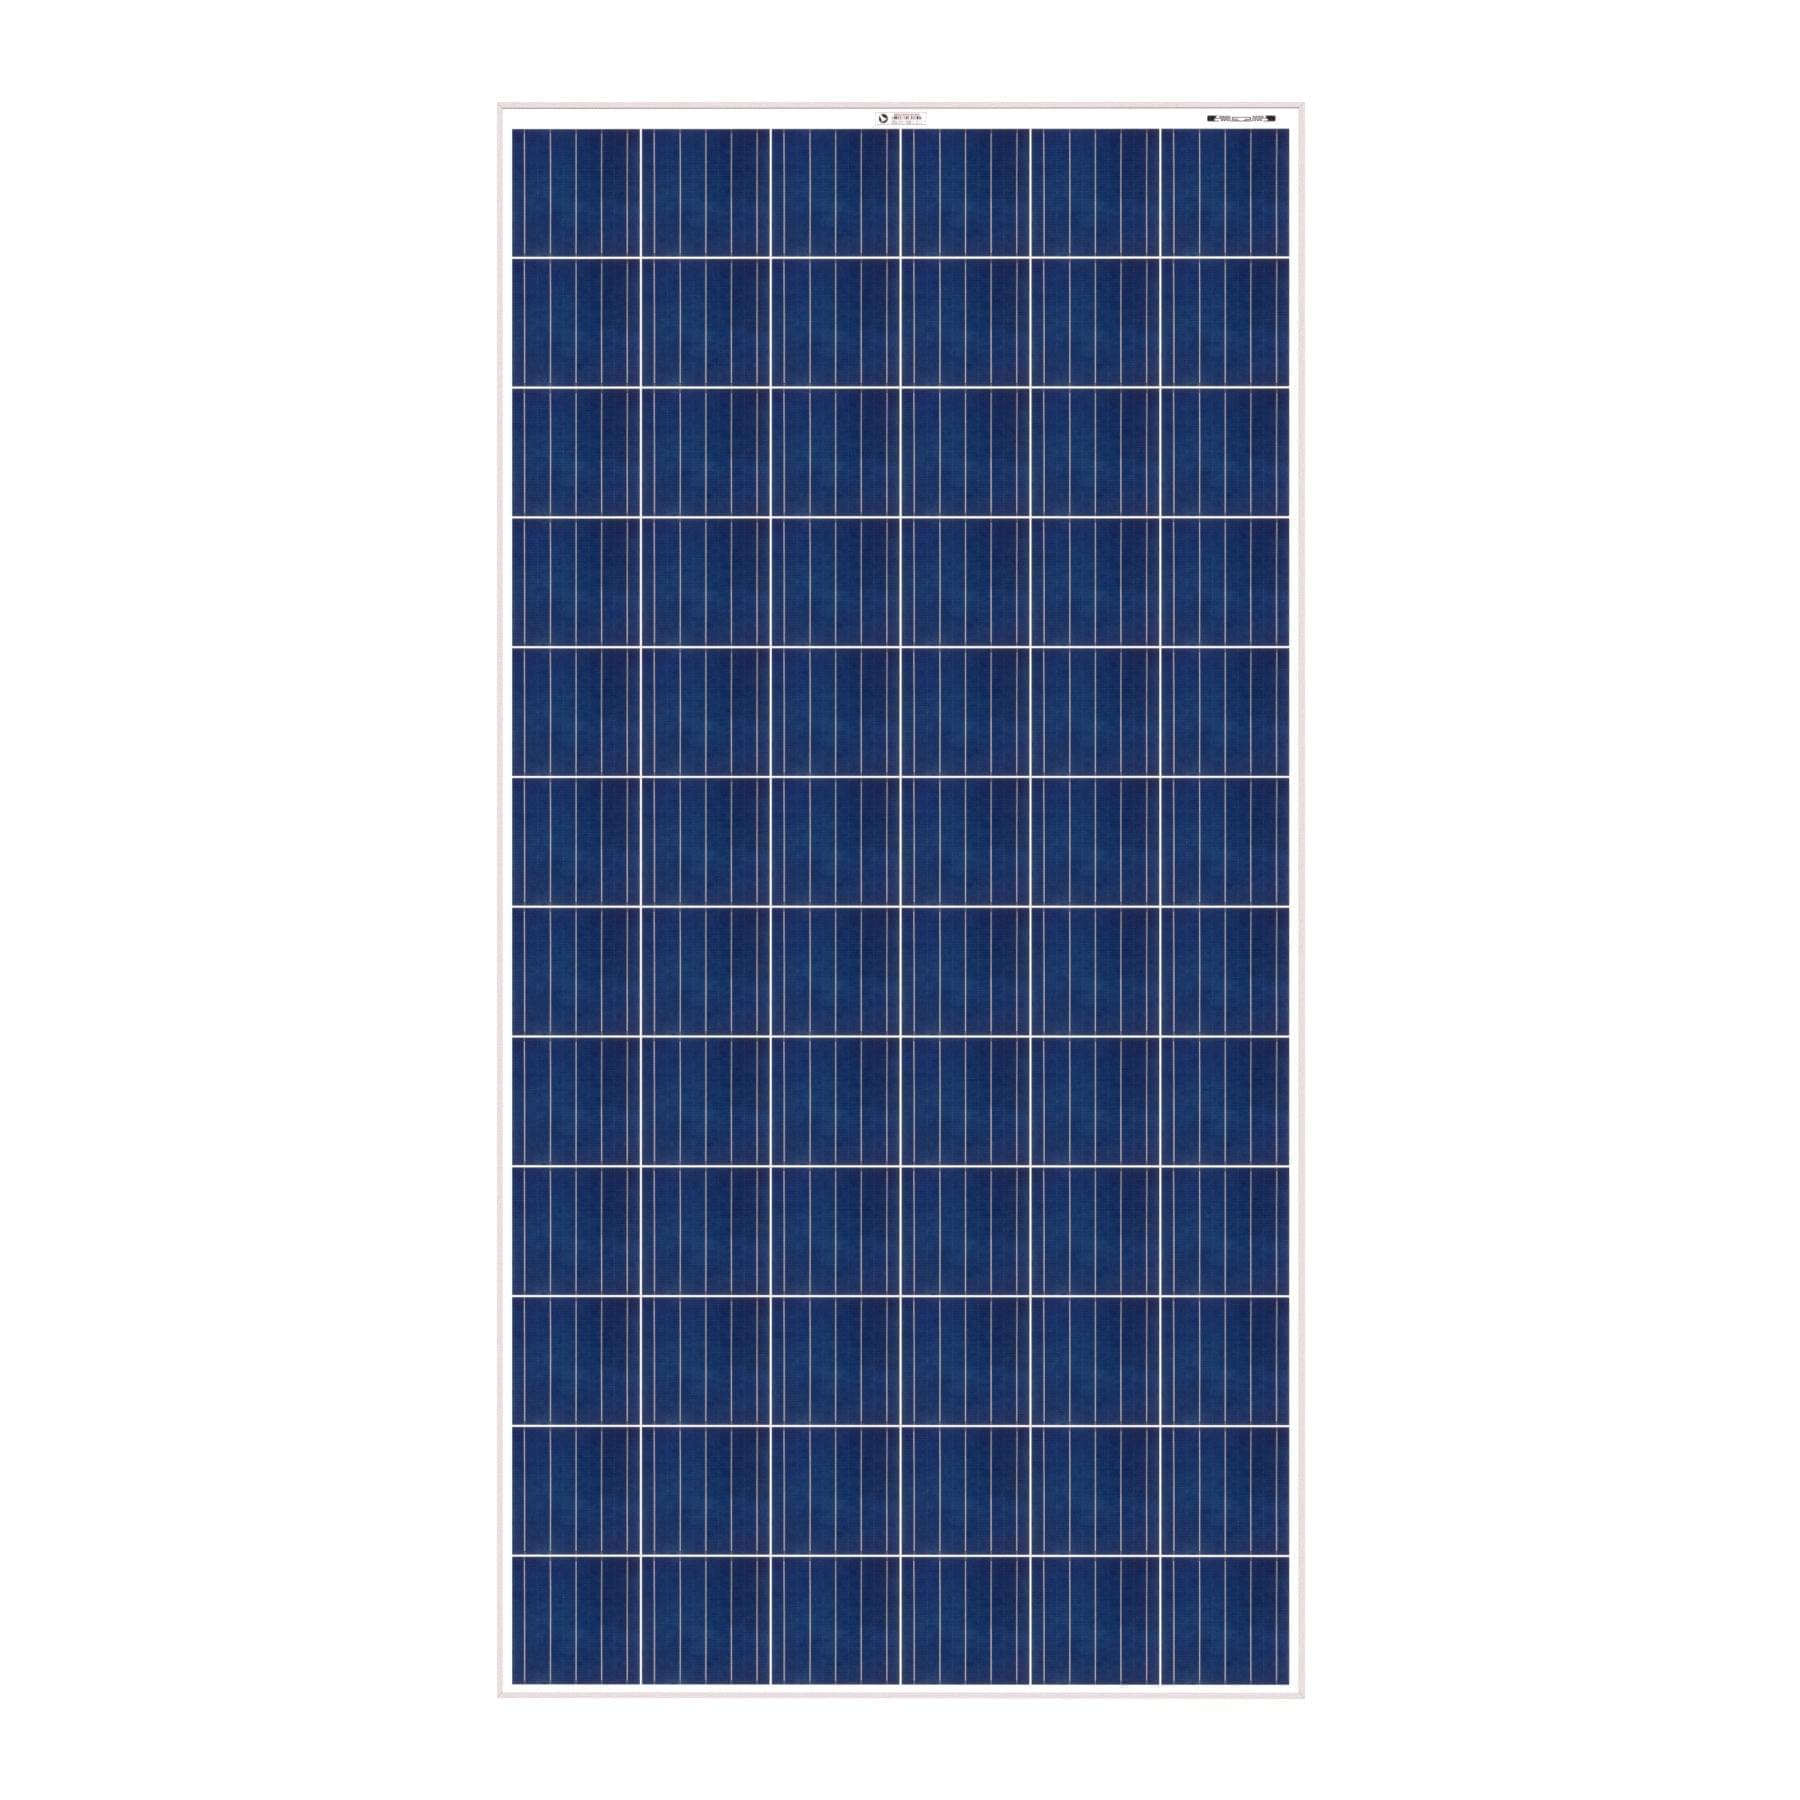 Bluebird 335 Watt 24 Volt Polycrystalline Solar Panel